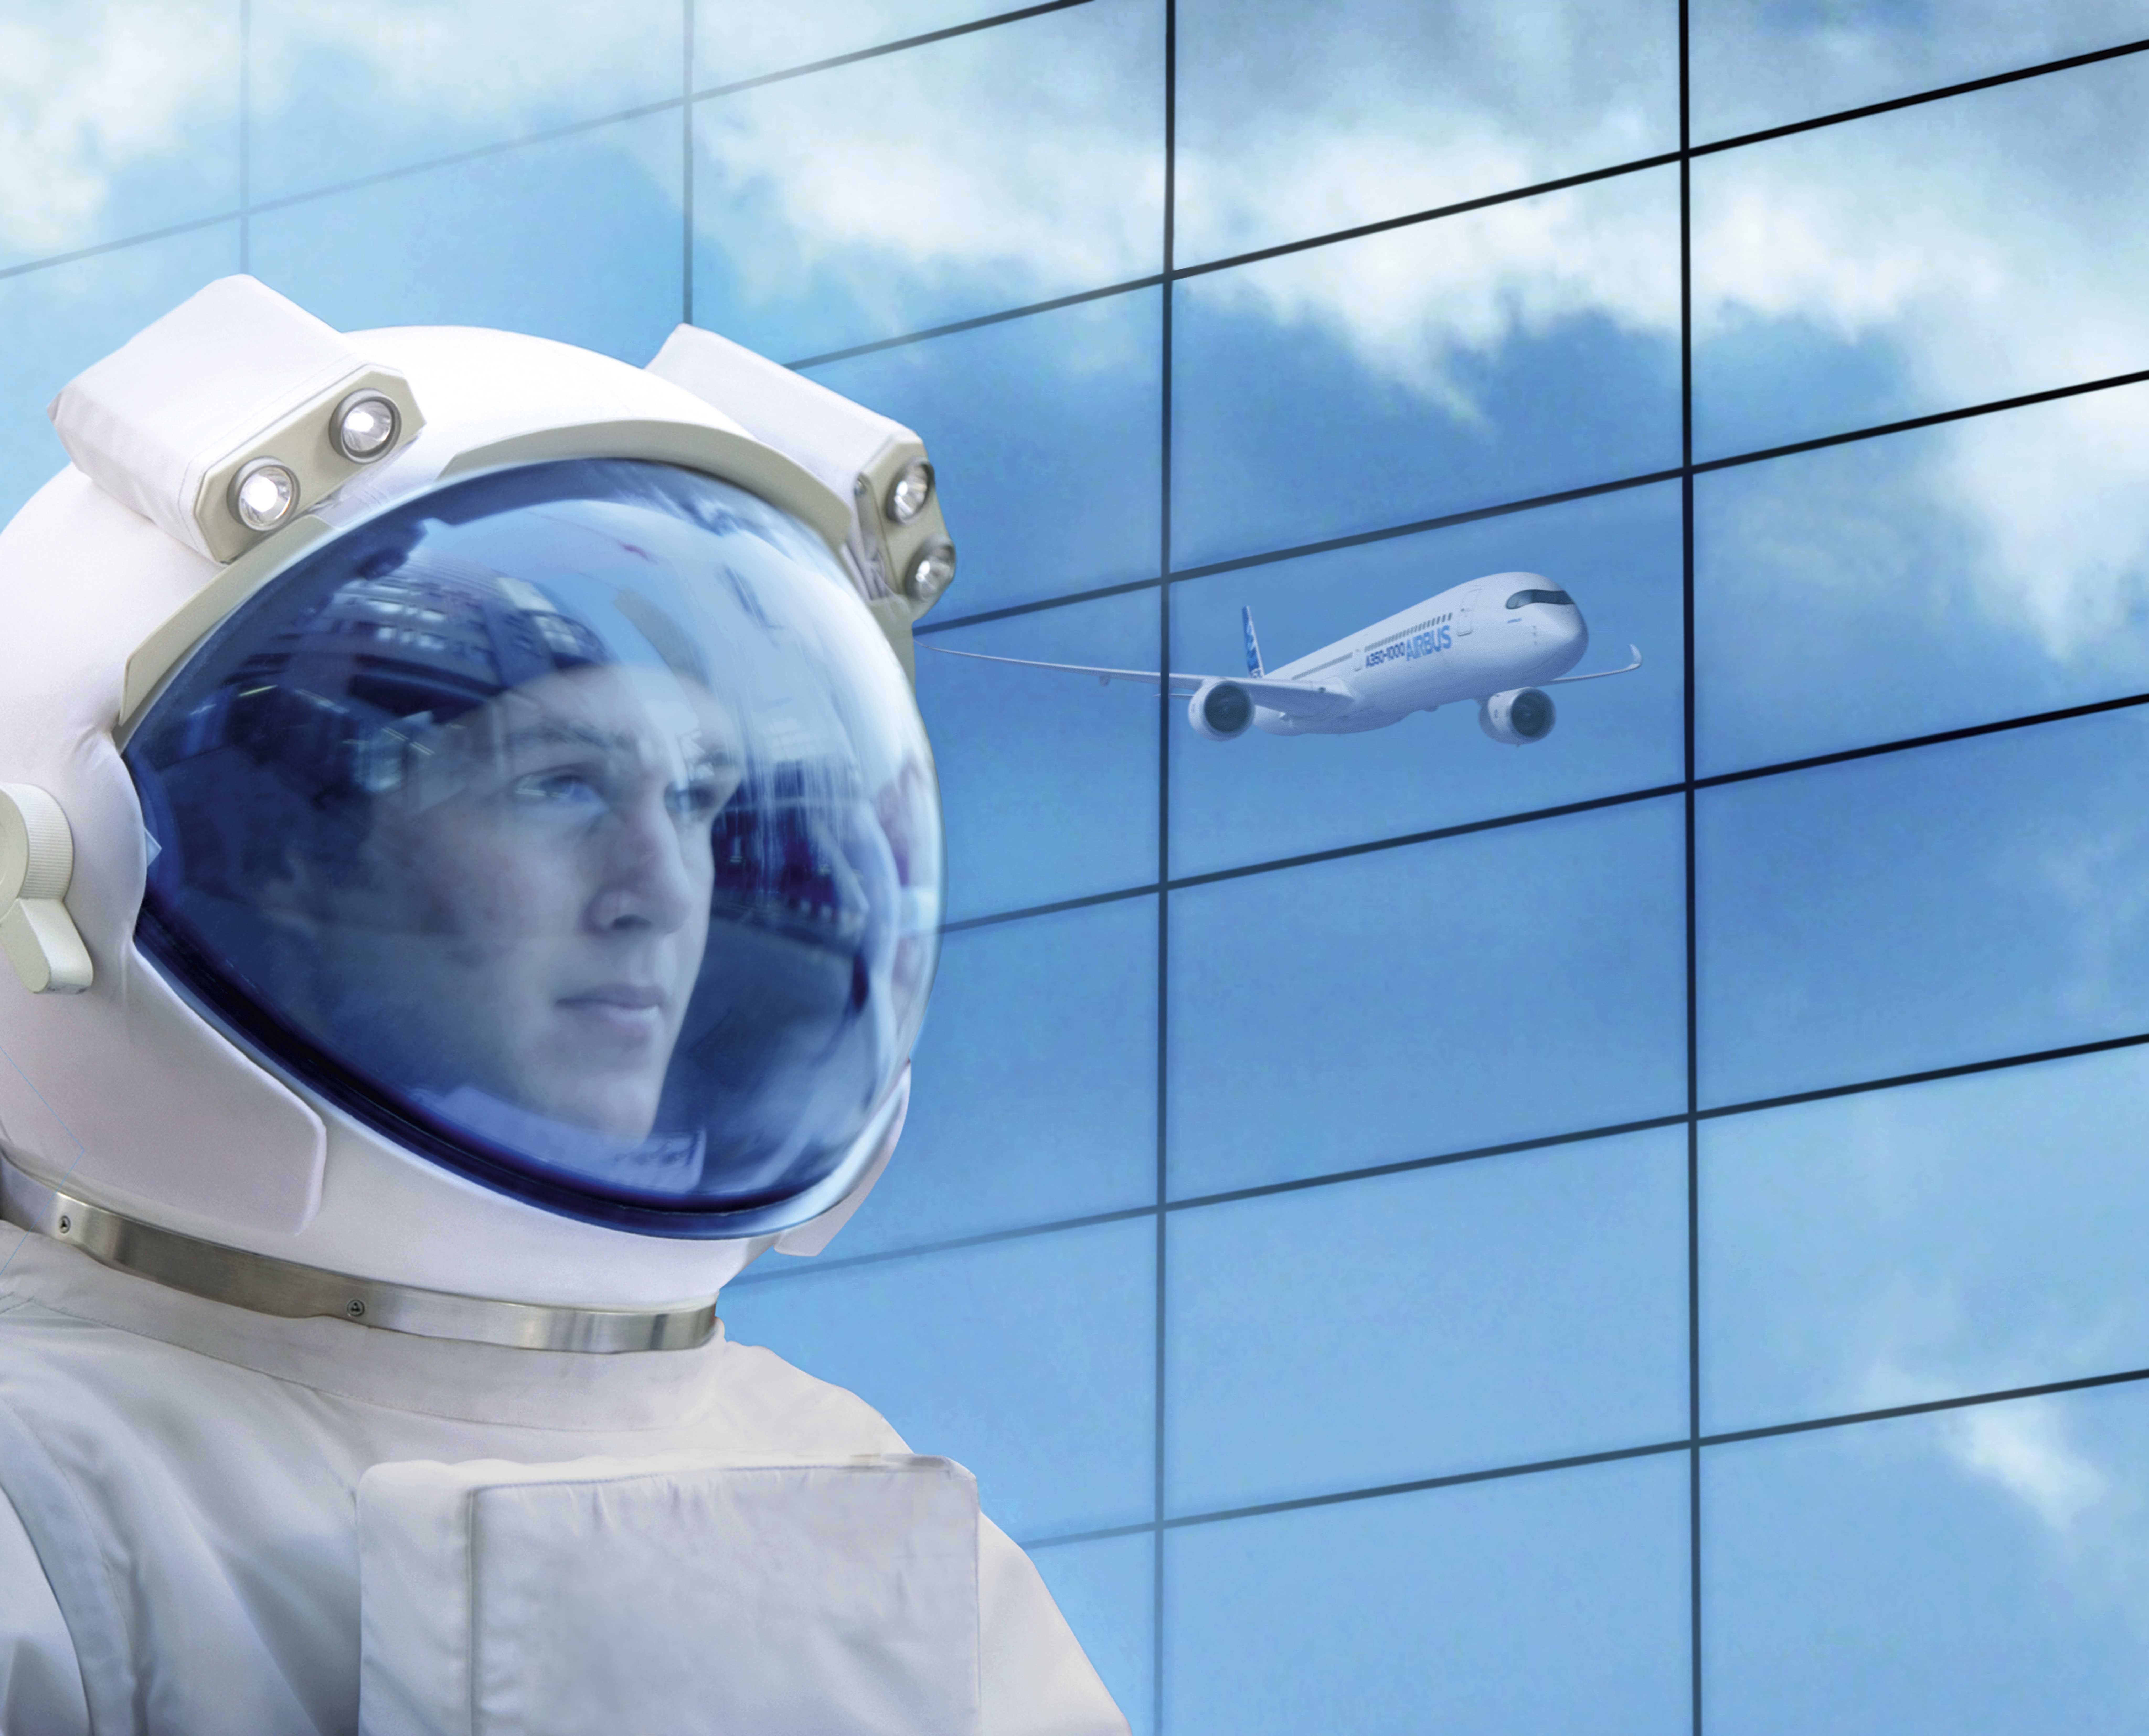 Eine Person in Astronautenkleidung vor einer Glaswand in der sich ein Flugzeug spiegelt